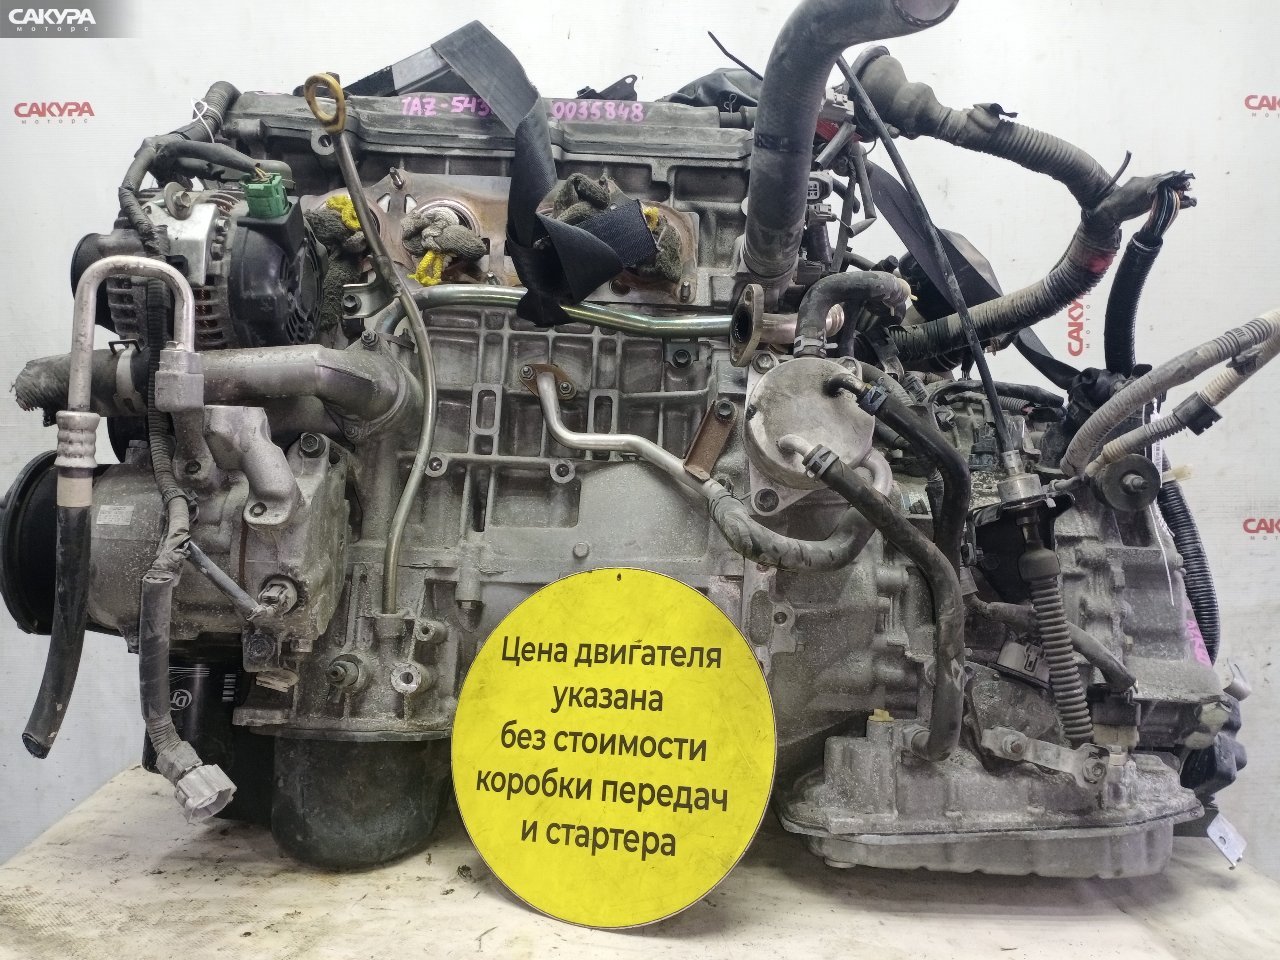 Двигатель Toyota Voxy AZR60G 1AZ-FSE: купить в Сакура Красноярск.